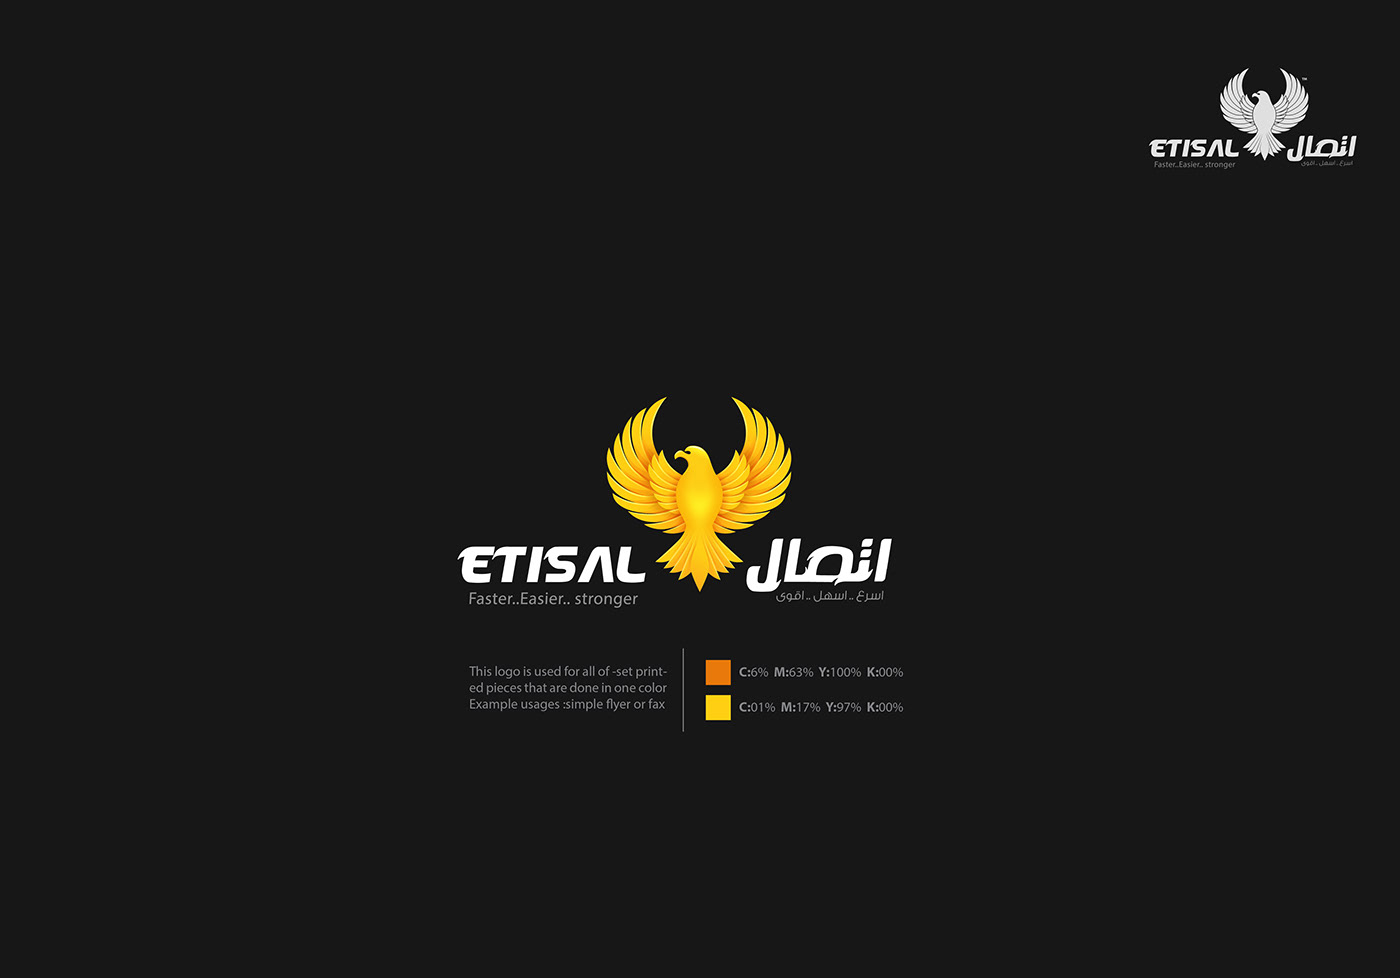 埃及设计师serag basel标志设计作品(二)